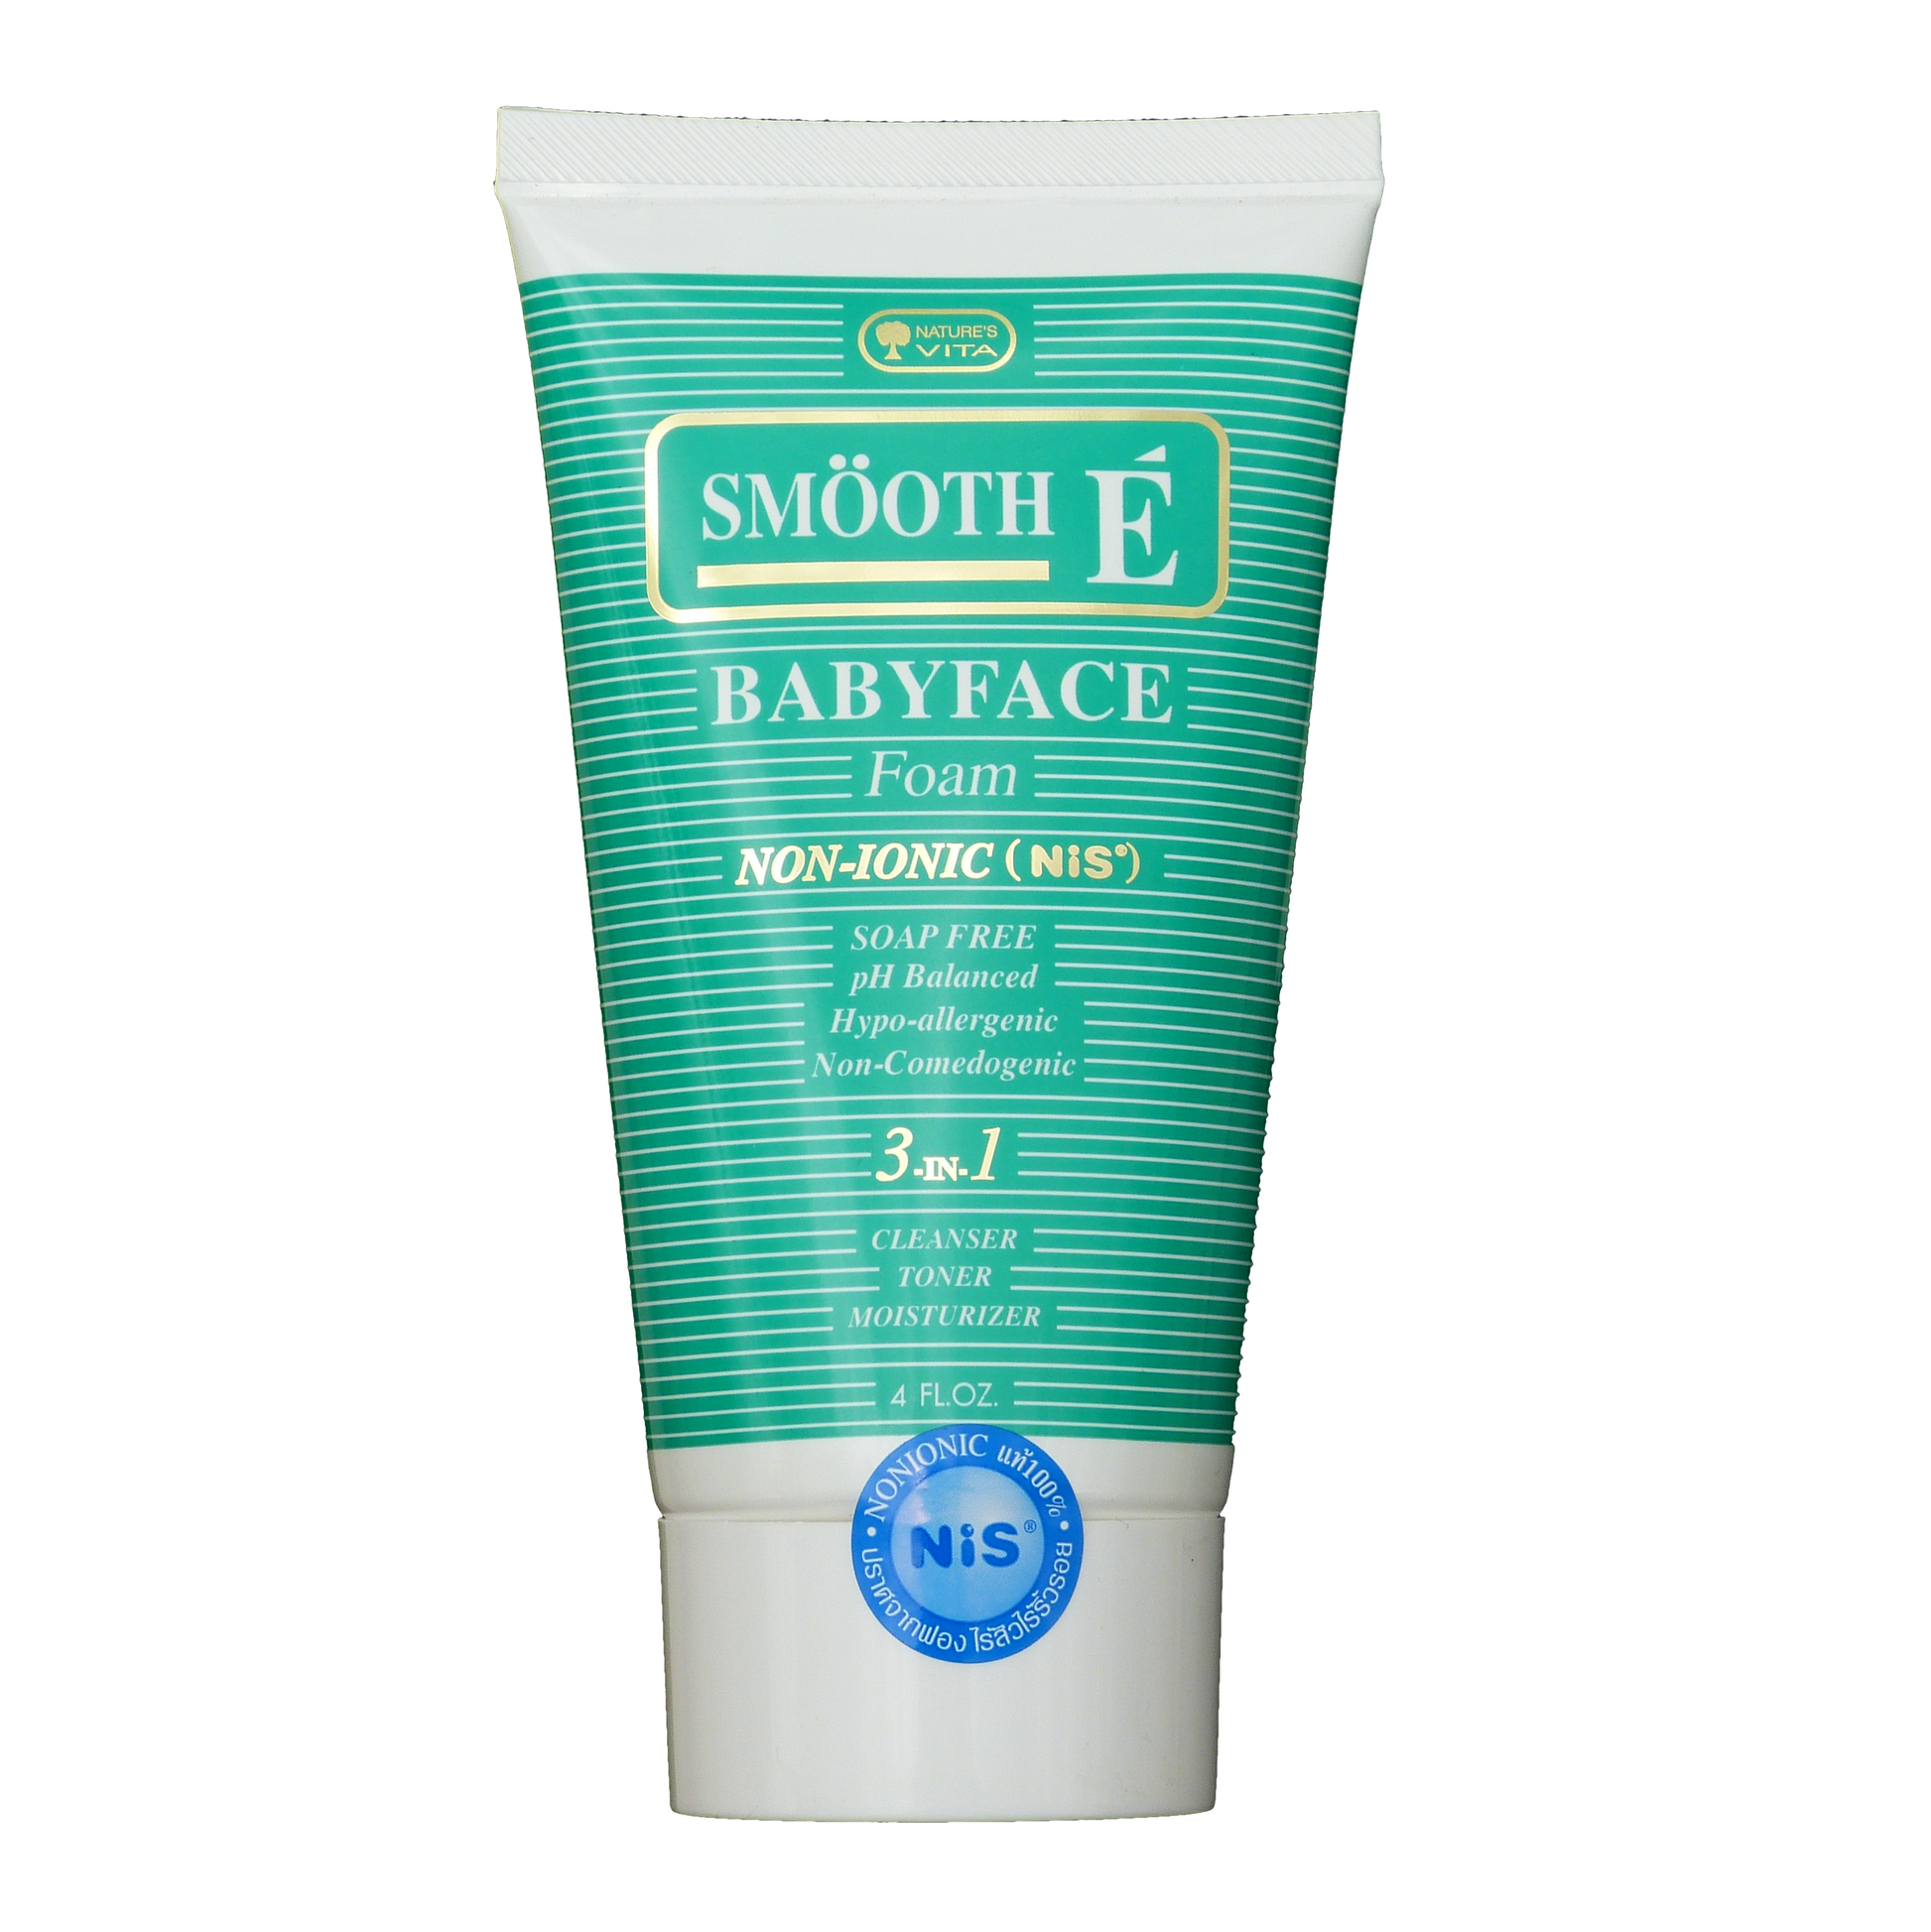 Smooth E Babyface Foam Non-Ionic Facial Cleanser 4.0 oz - Asian Beauty Supply